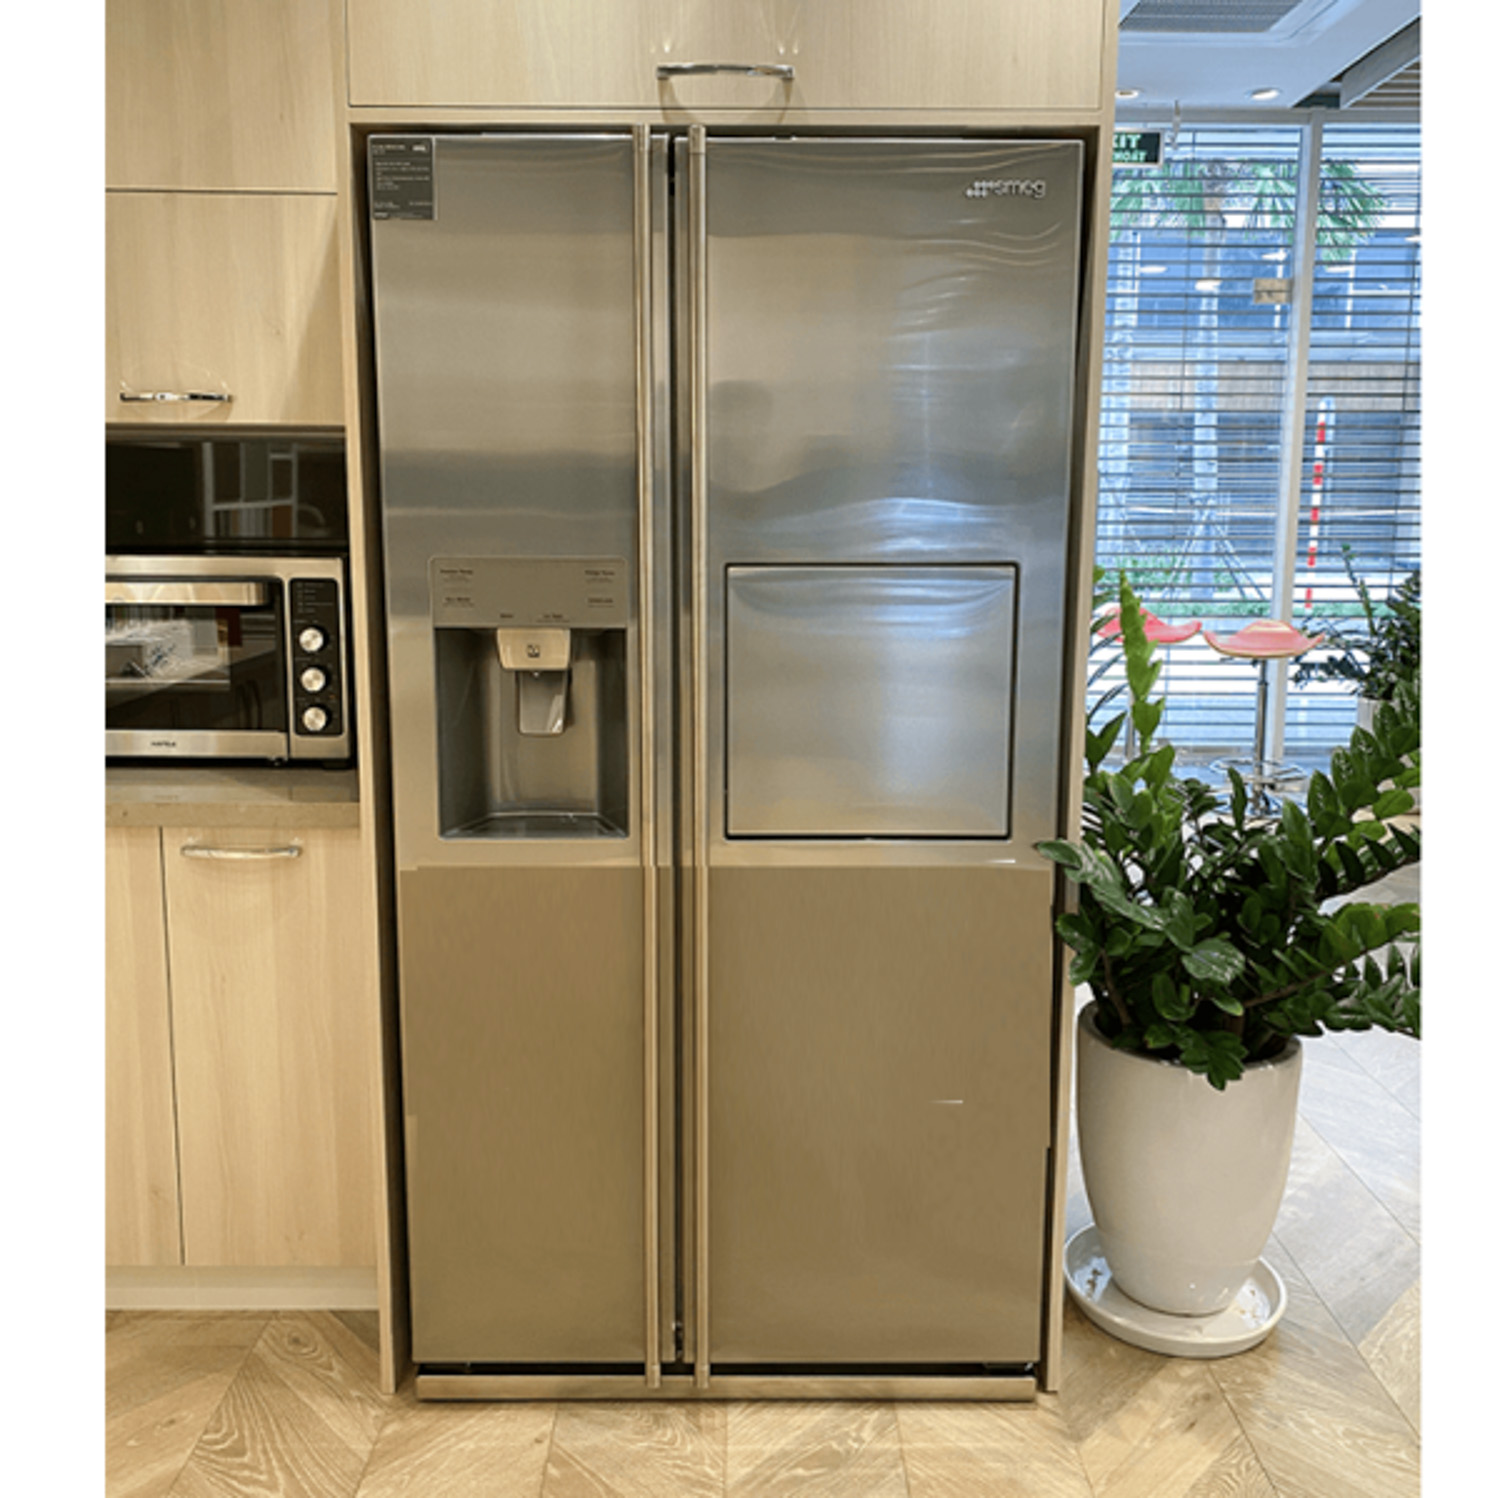 Tủ lạnh SIDE-BY-SIDE độc lập SMEG SBS662X 535.14.999 sở hữu thiết kế lắp âm hiện đại